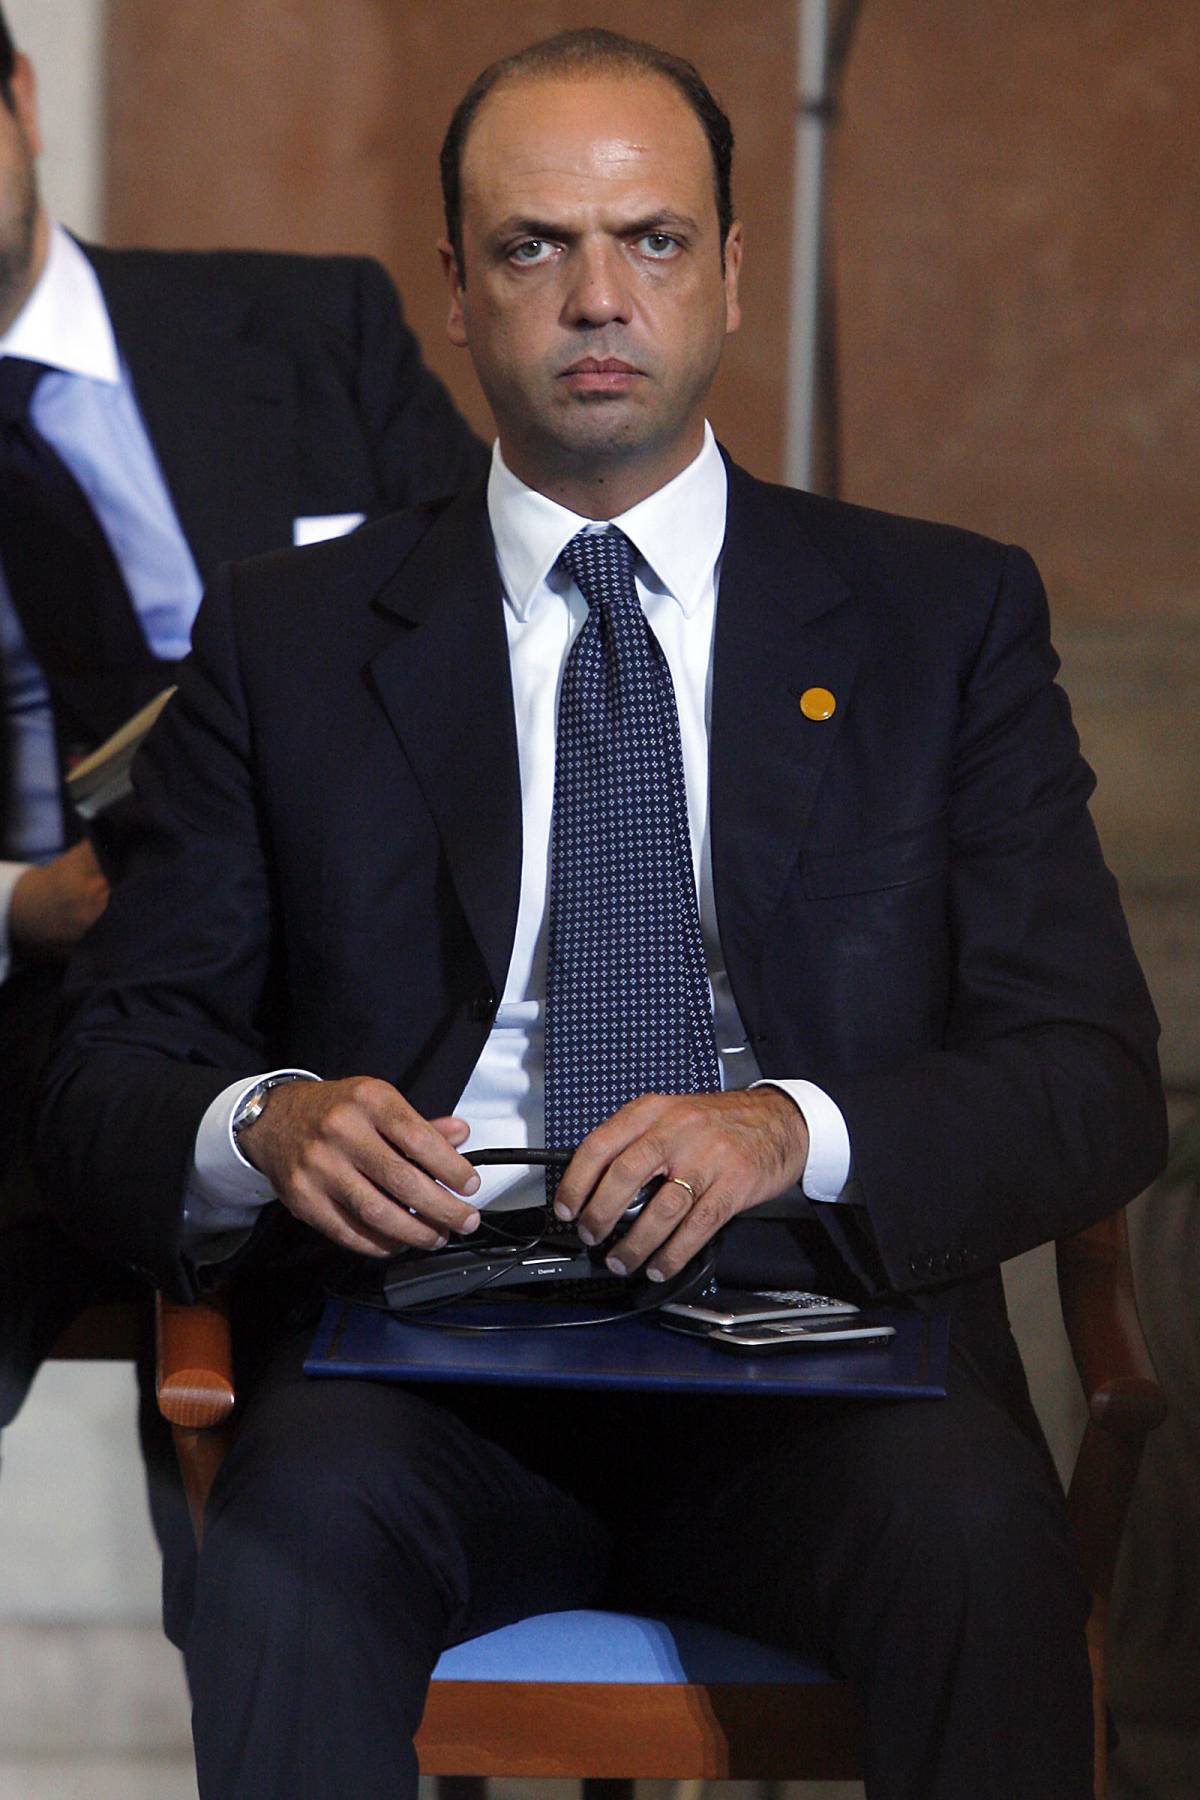 Carceri, Napolitano: "La situazione è critica" 
Alfano: "Un piano contro il sovraffollamento"